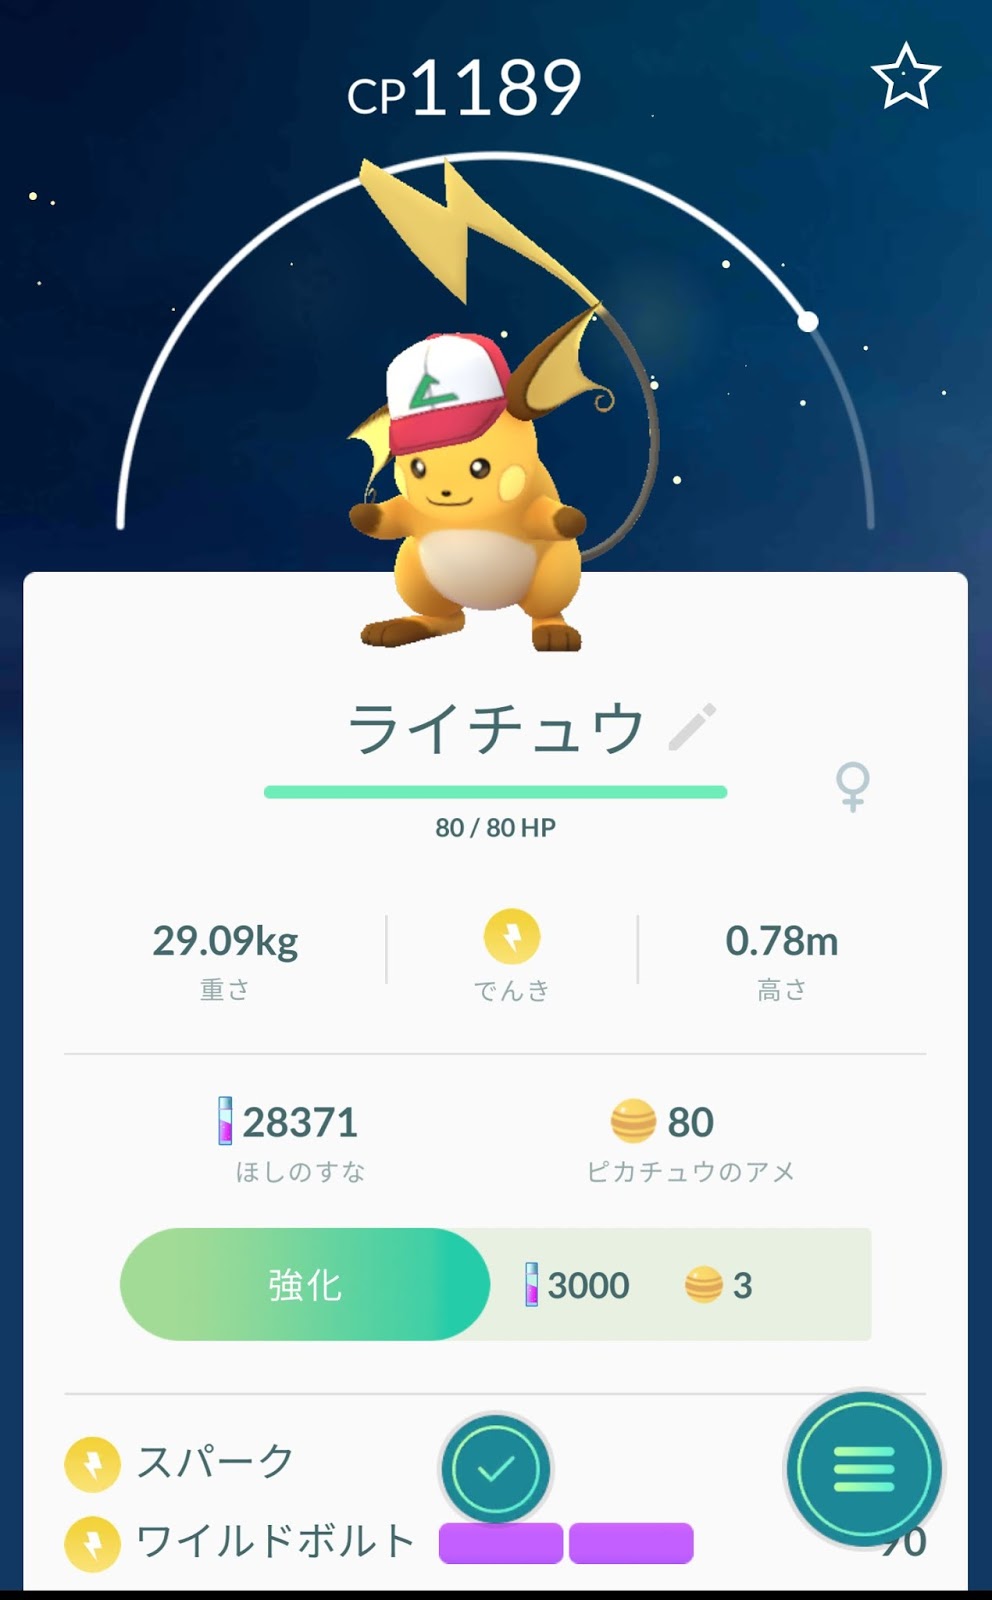 ポケモンgo日記 Pokemon Go Diary In Japan サトシの帽子のピカチュウ オス メス をライチュウに進化 させてみた